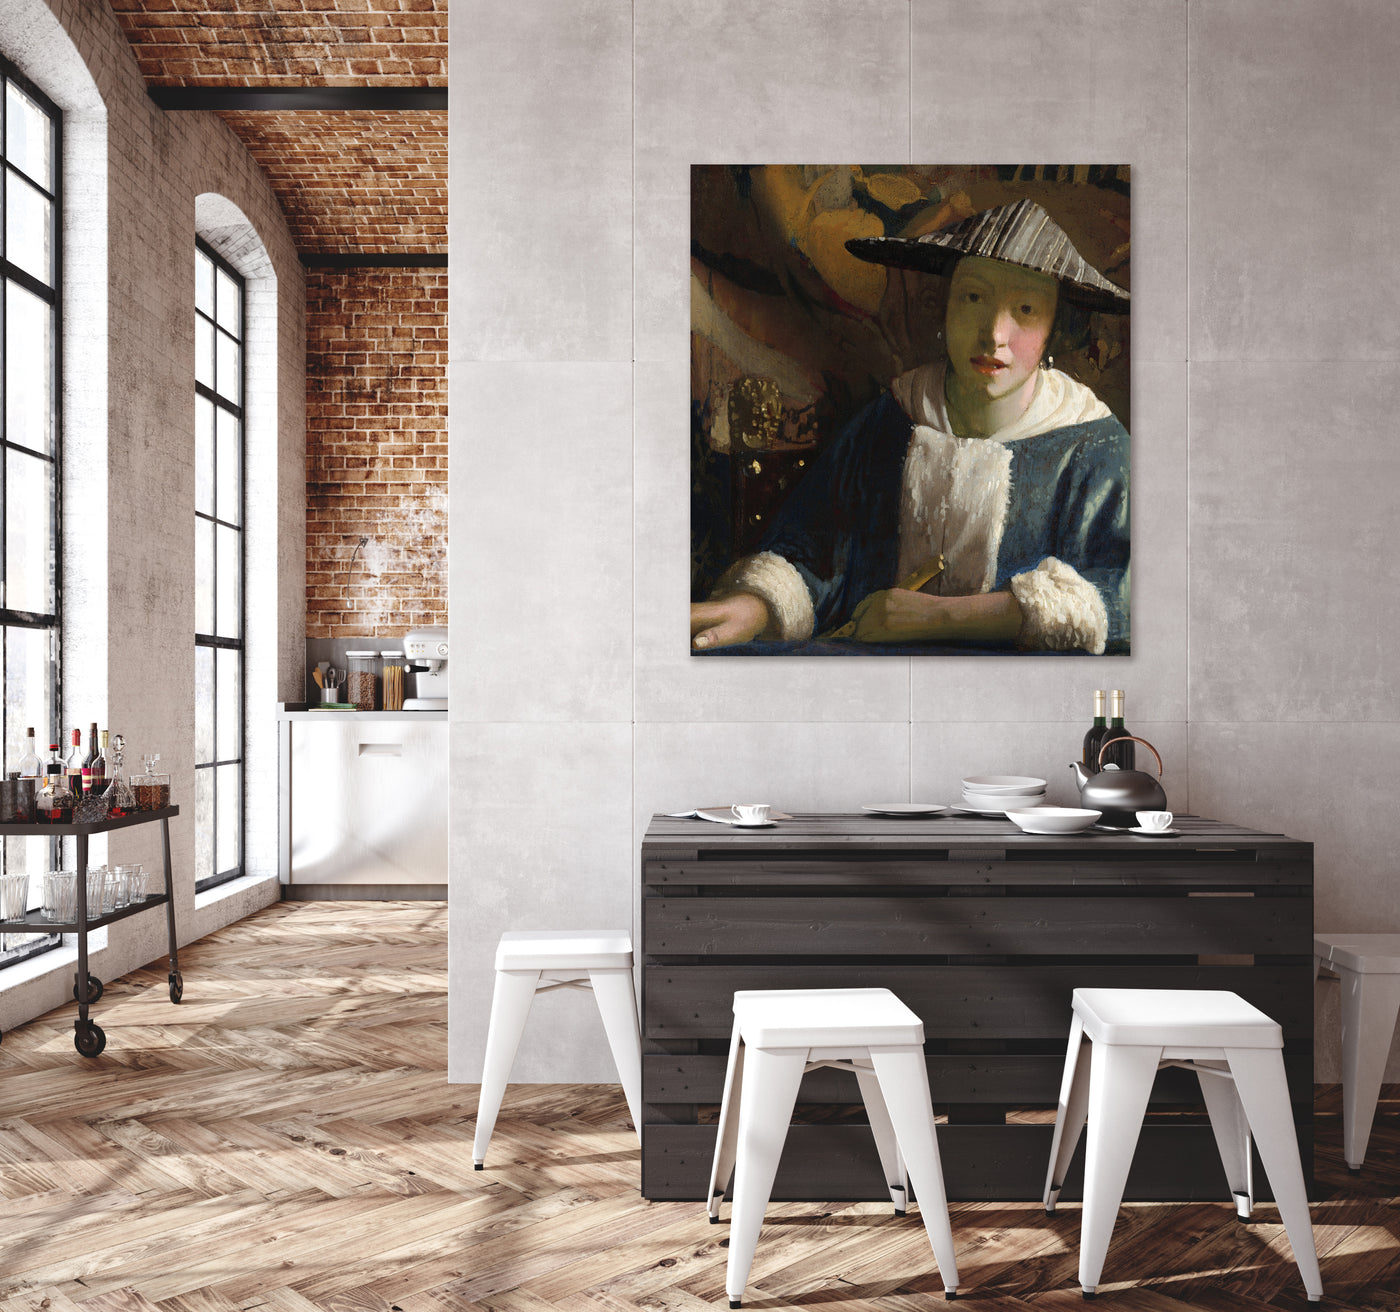 Meisje met een fluit - Johannes Vermeer